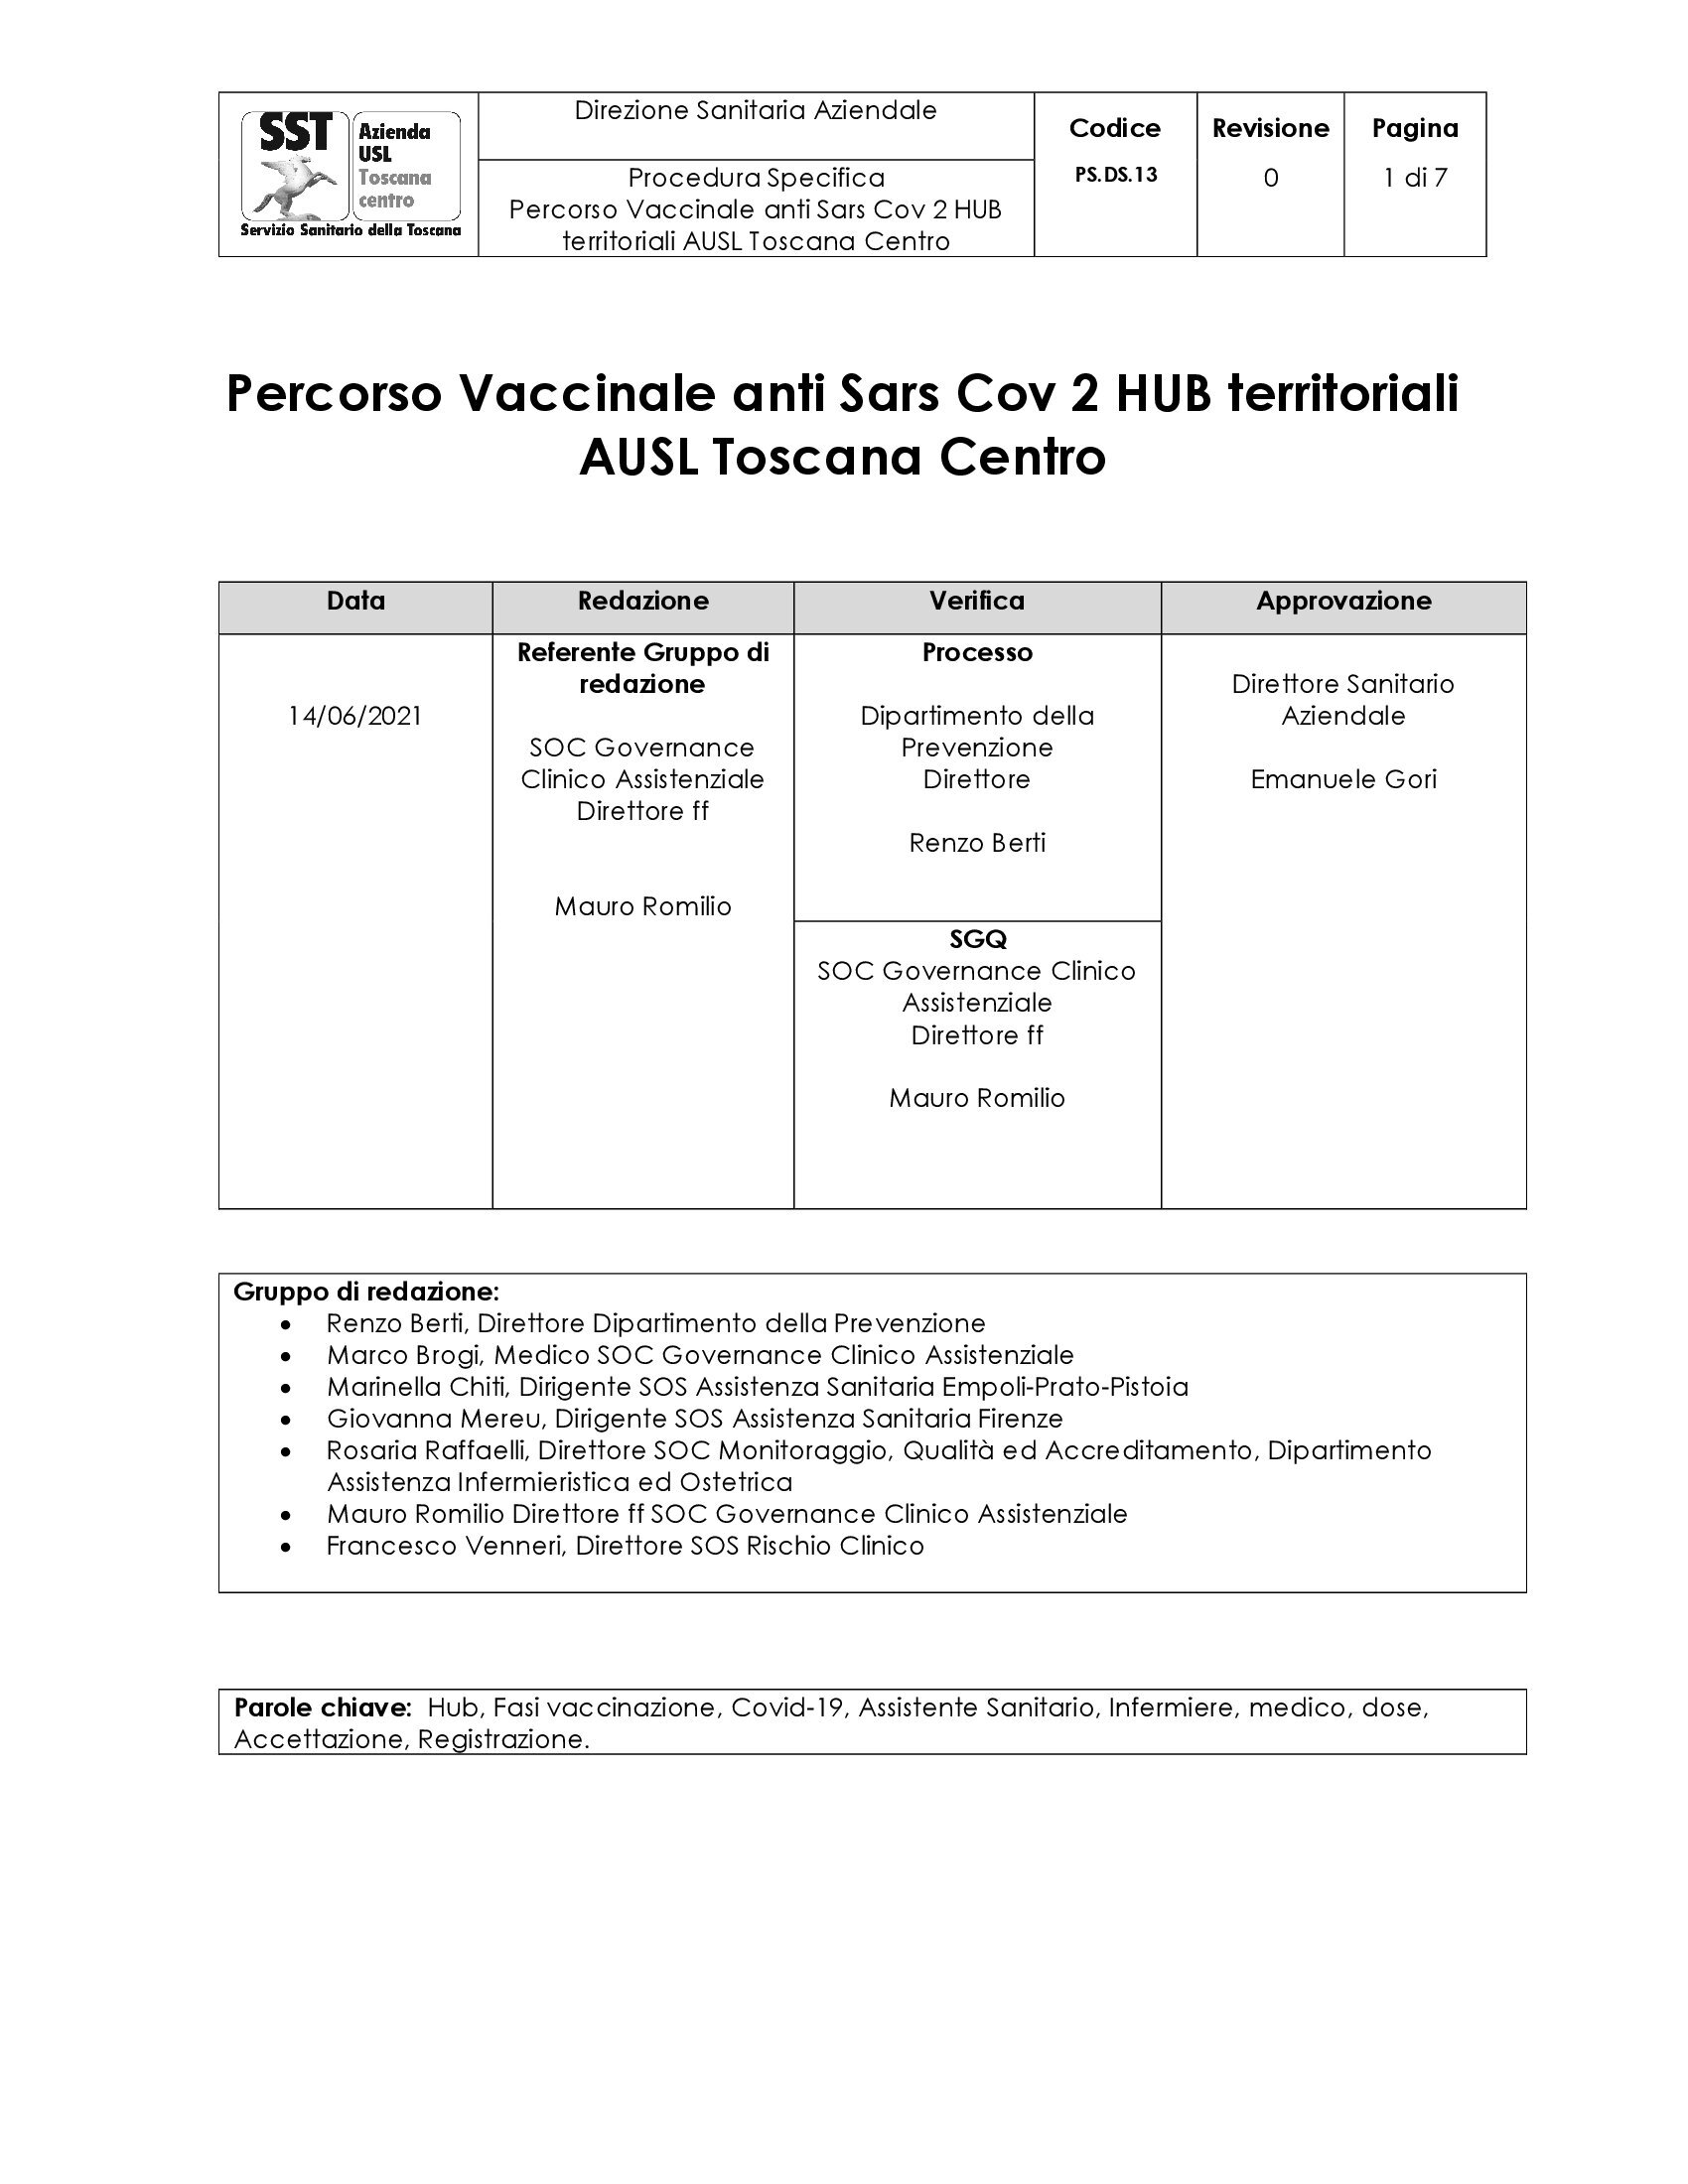 PS.DS.13 Percorso Vaccinale anti Sars Cov 2 HUB territoriali AUSL Toscana Centro